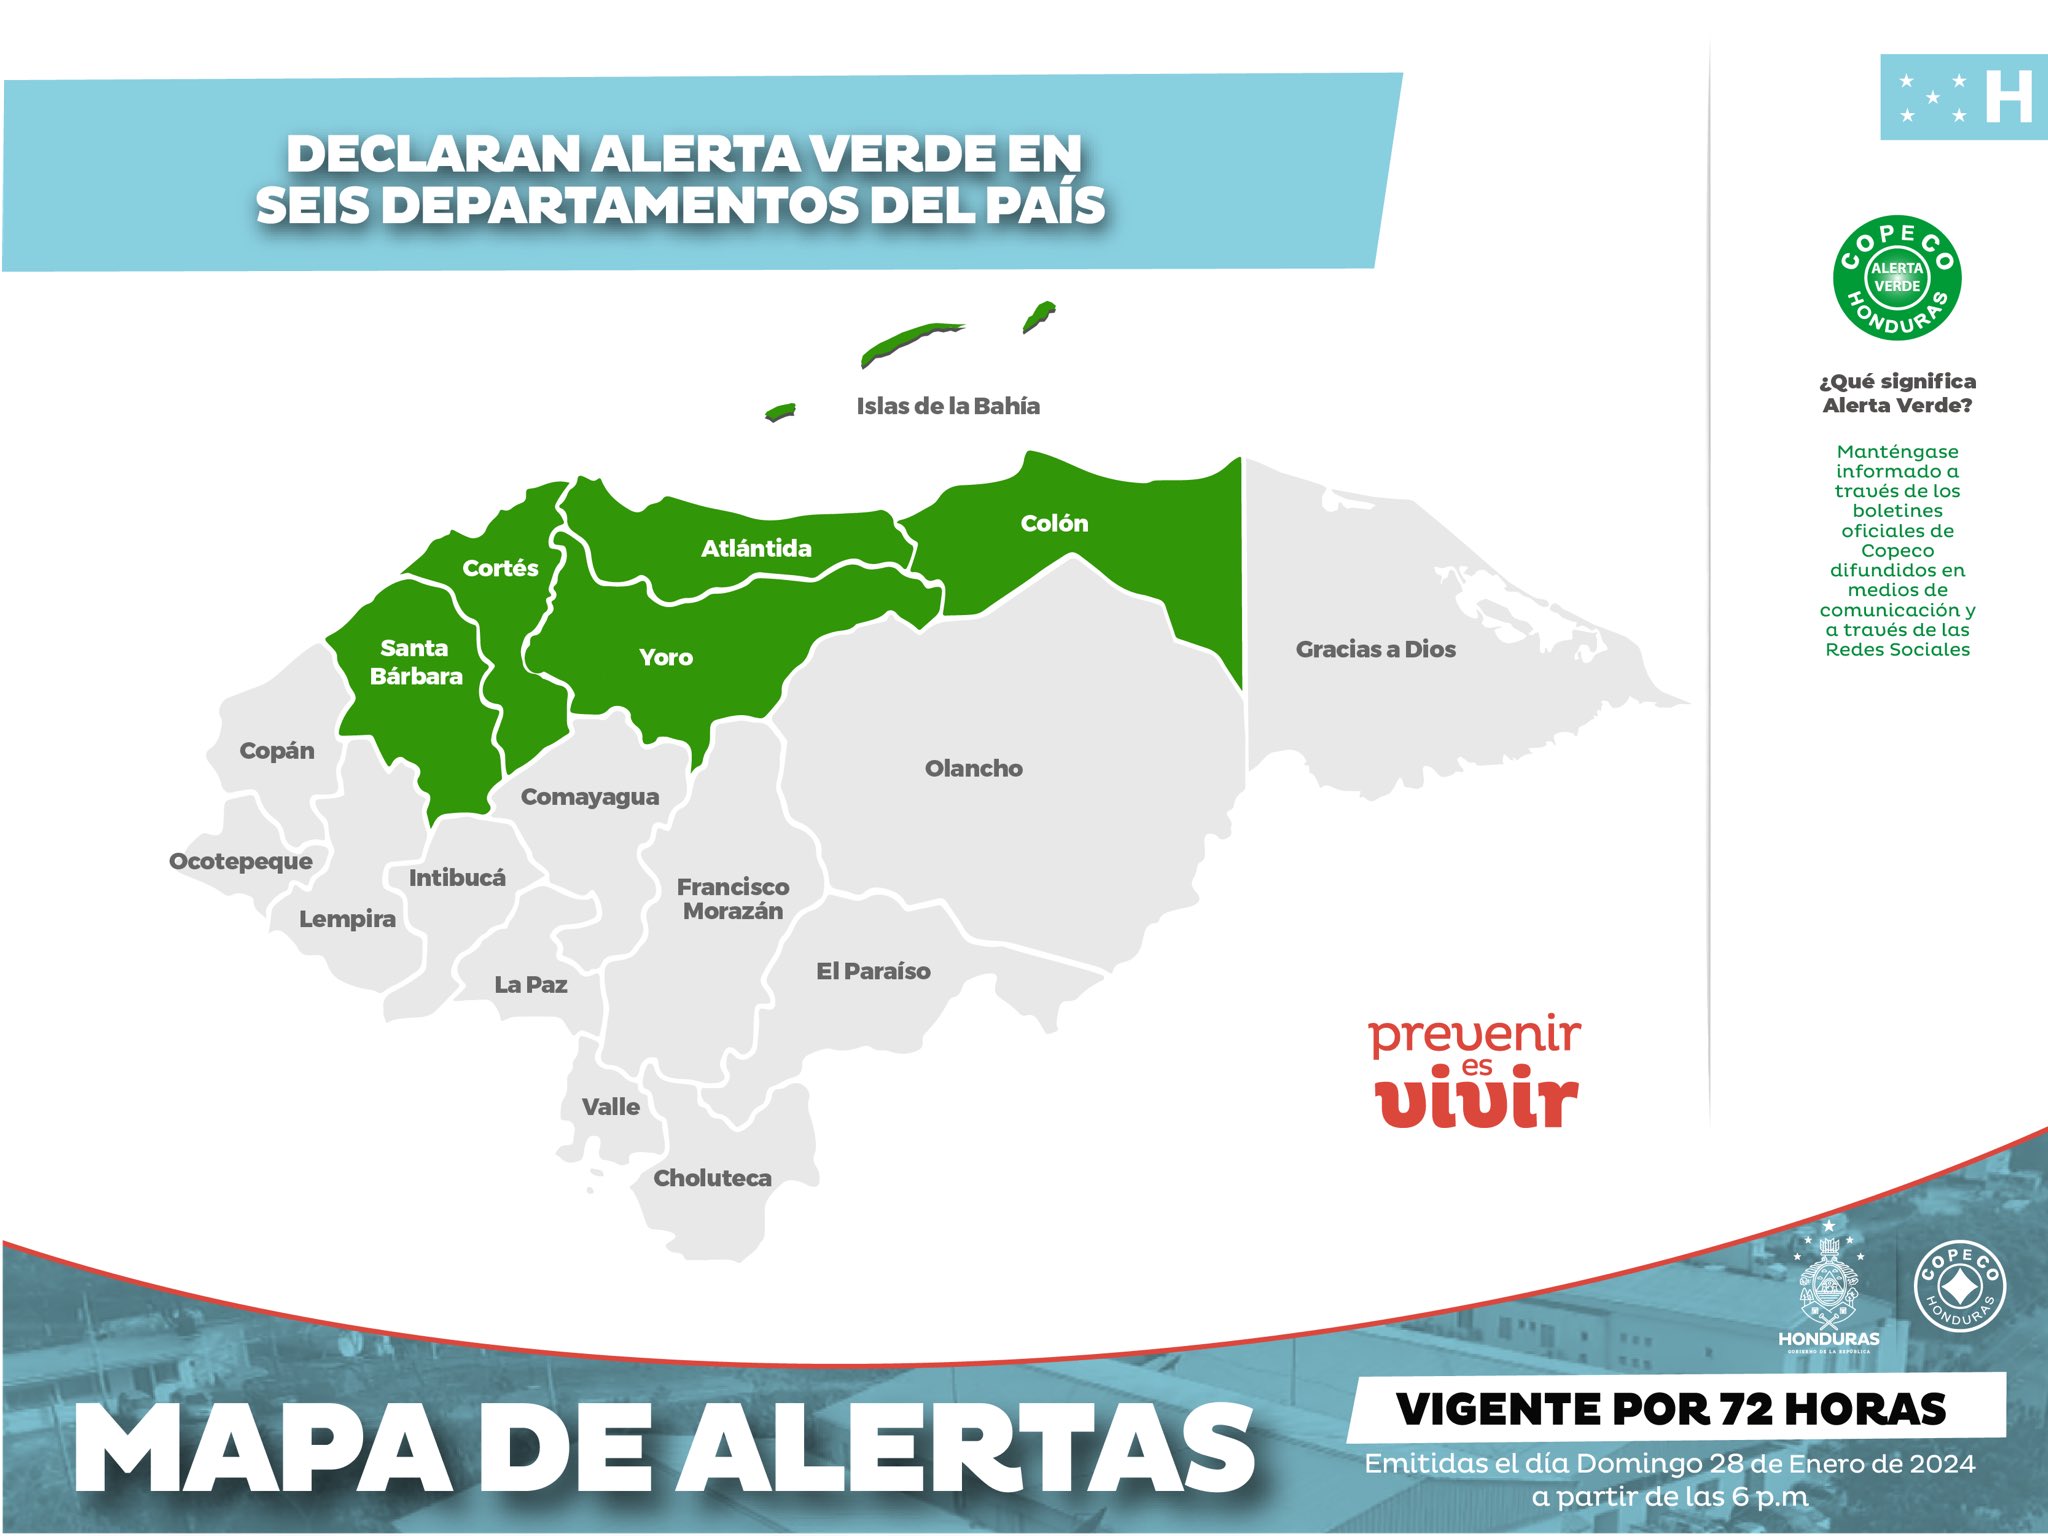 COPECO: Por frente frío, declaran alerta verde en seis departamentos del país por 72 horas